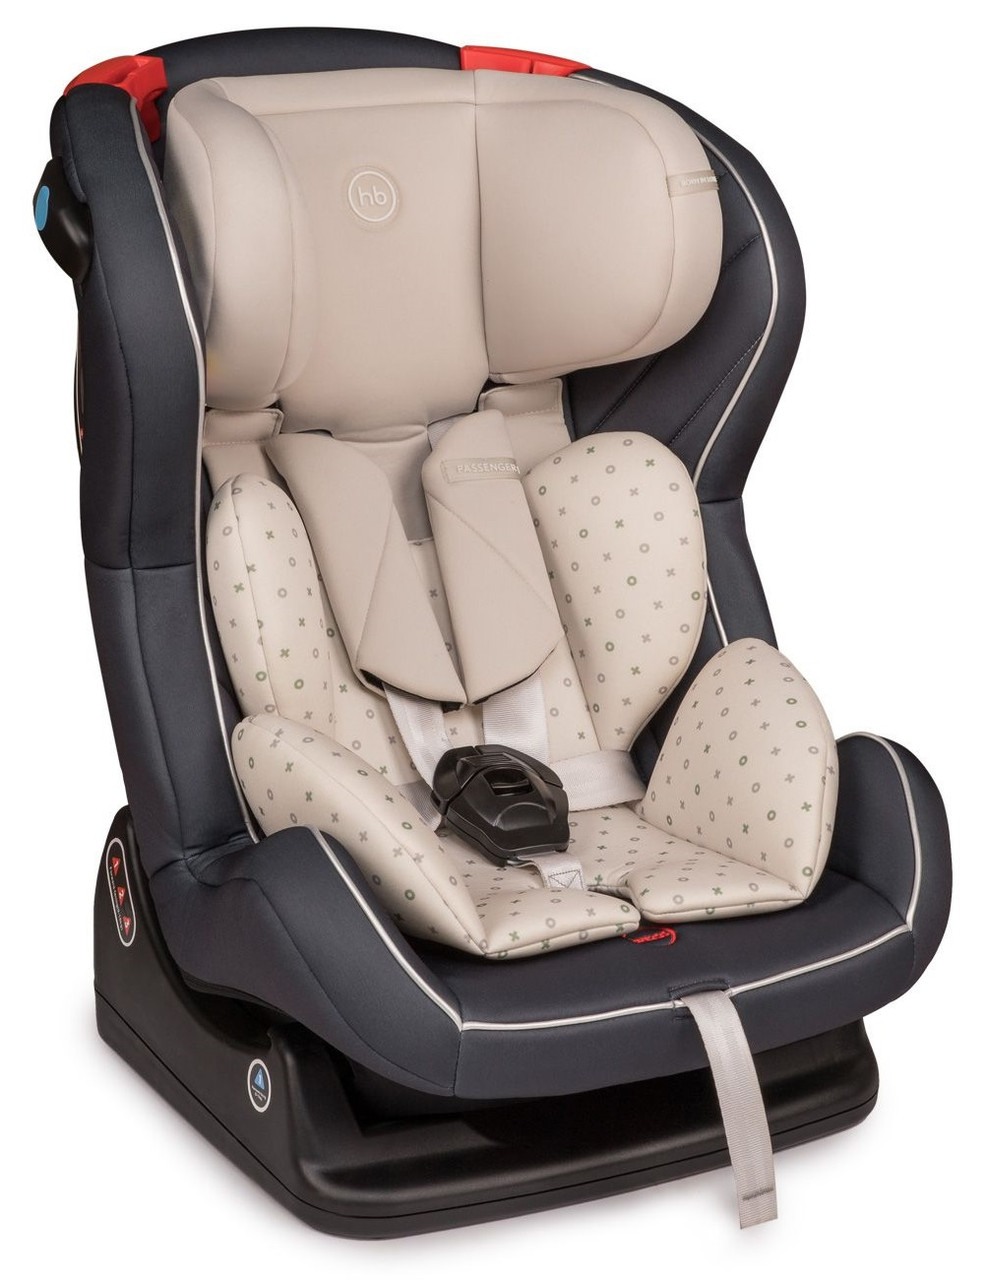 Автокресло Passenger V2 Graphite 0-25 кг (Happy Baby, Великобритания)